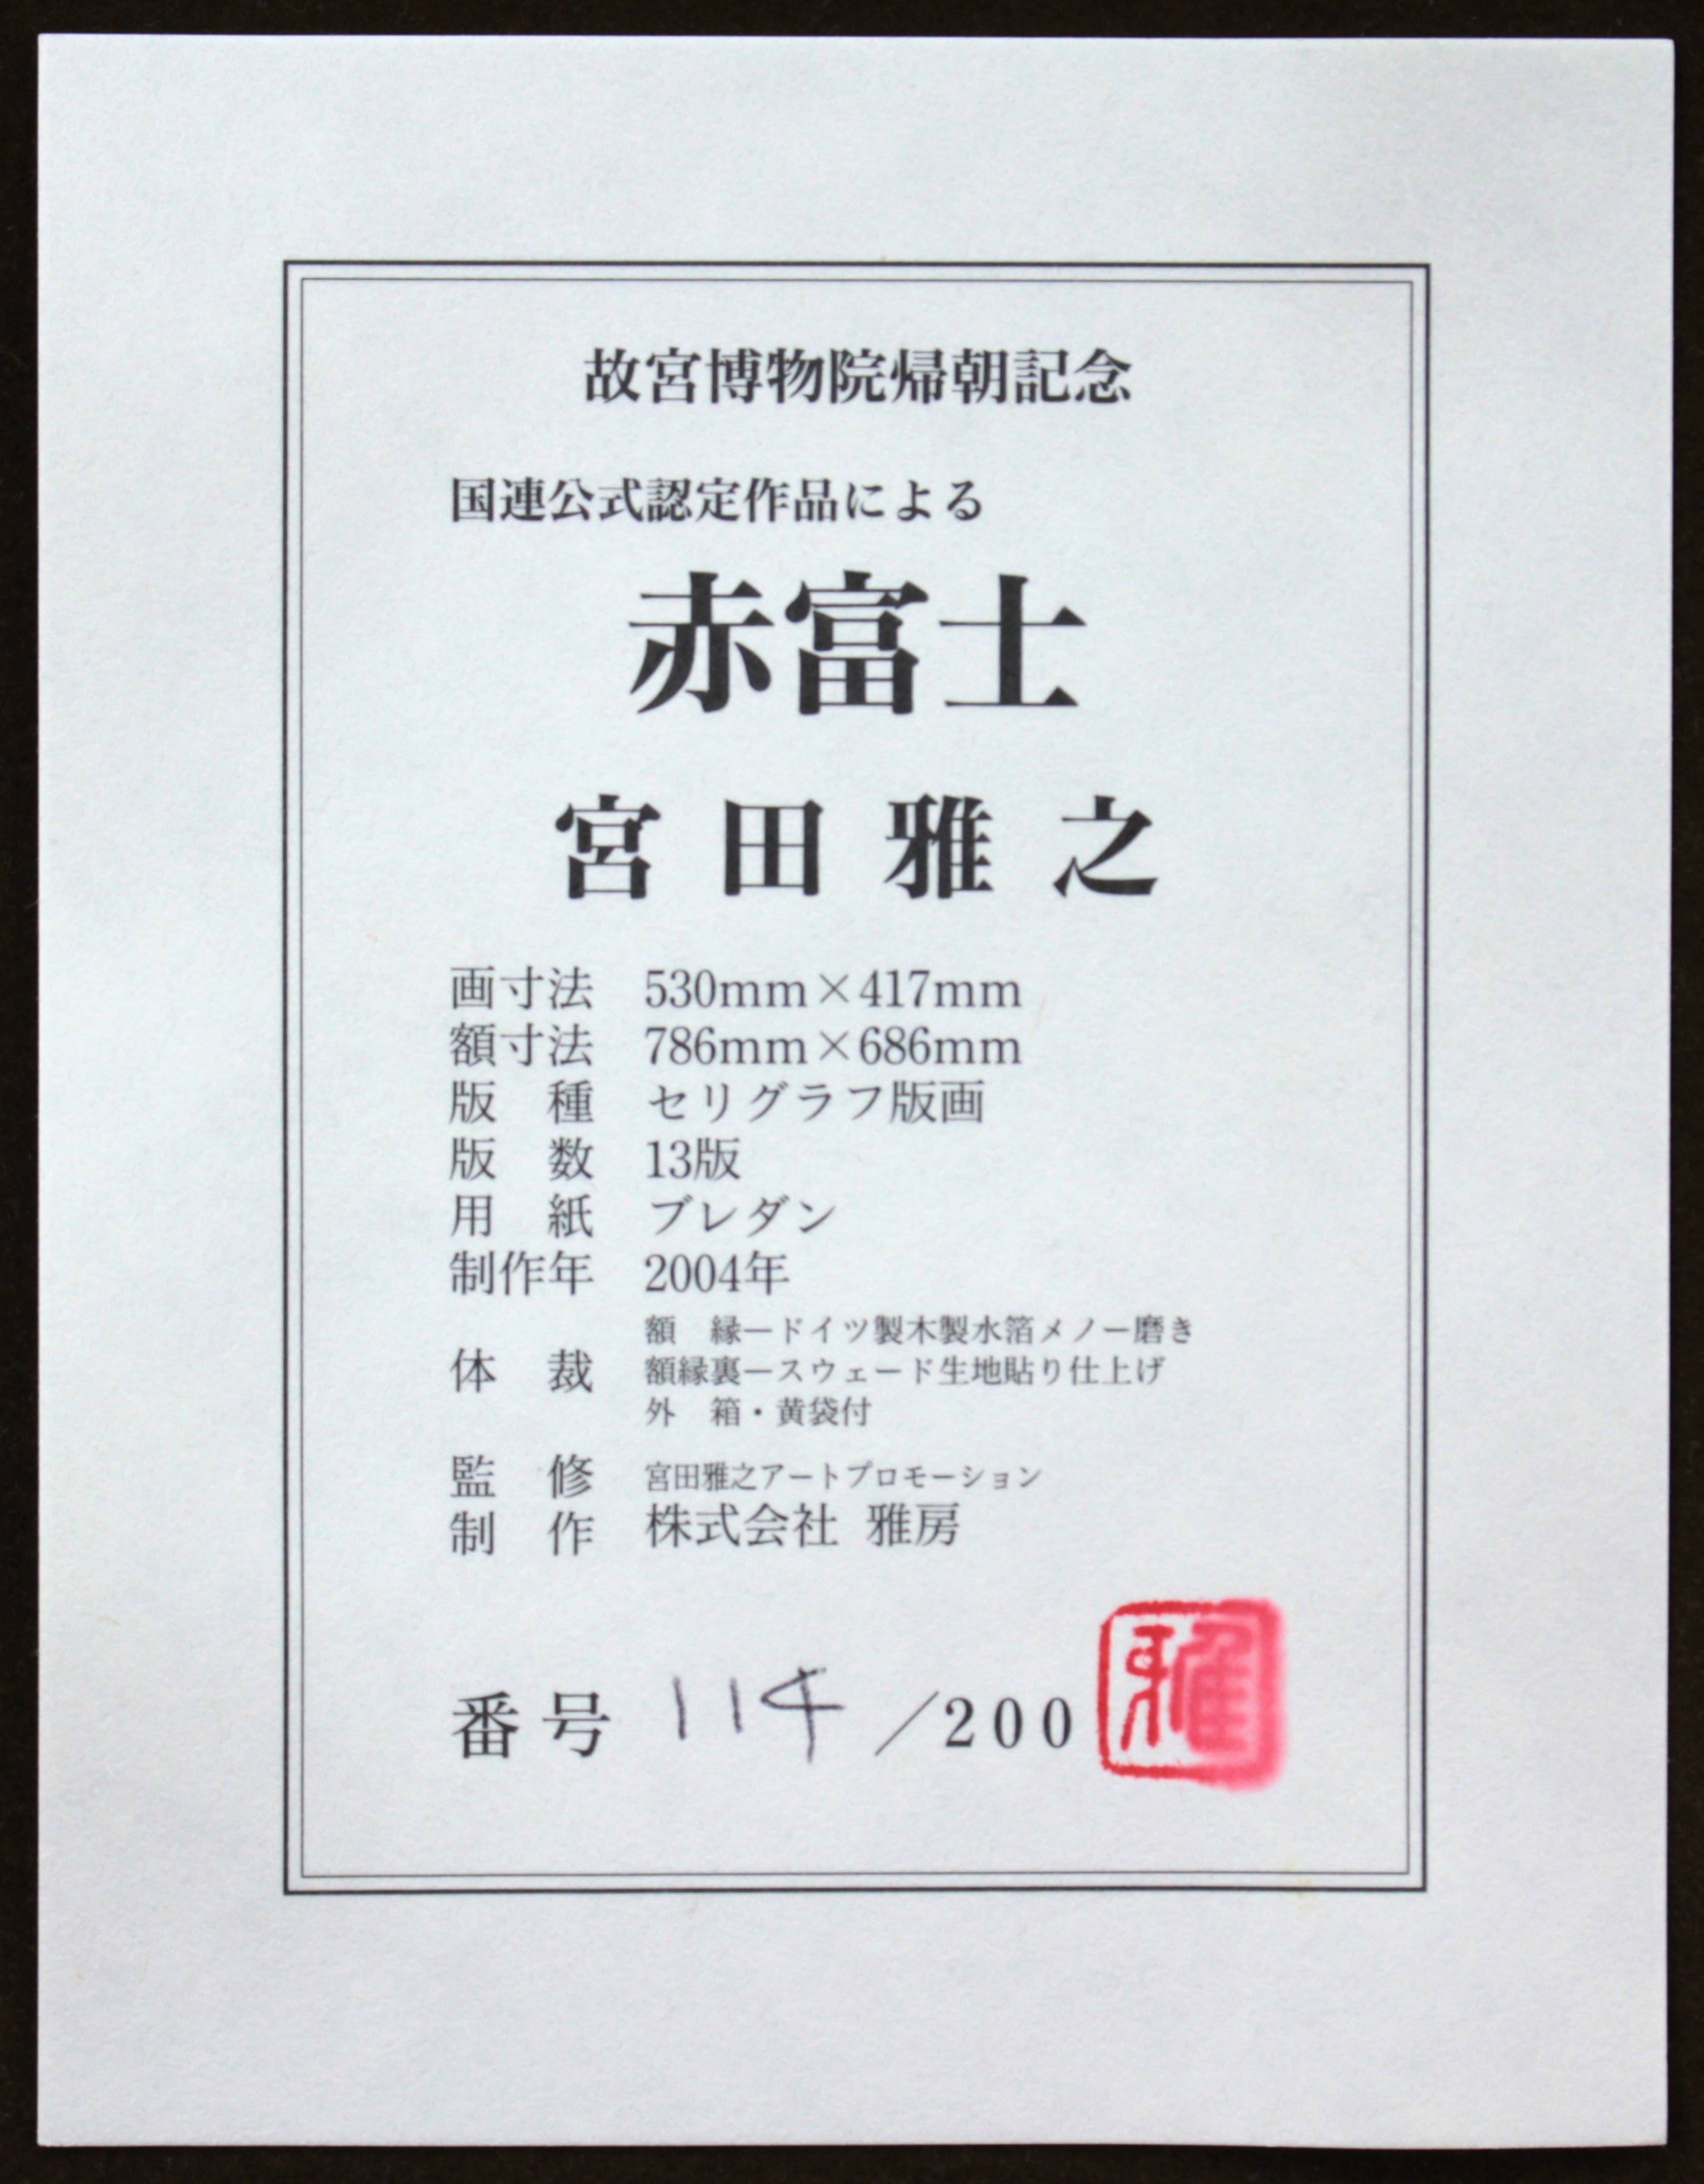 宮田雅之 『赤富士』 シルクスクリーン - 北海道画廊